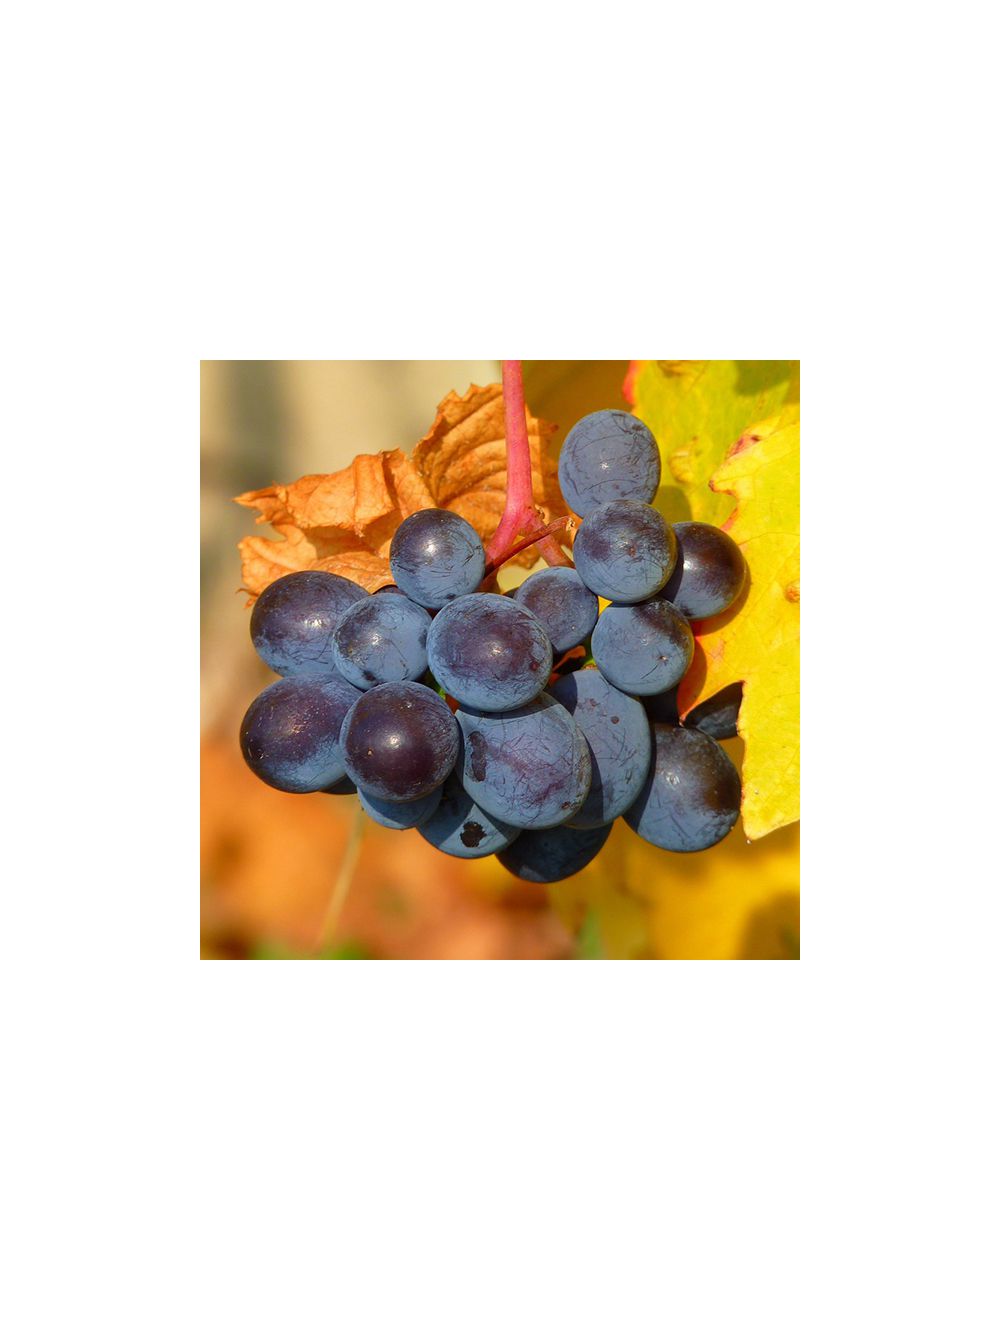 Buiten Sinis Pathologisch Blauwe druif kopen - Blauwe druif - Vitis labrusca Mika bestellen